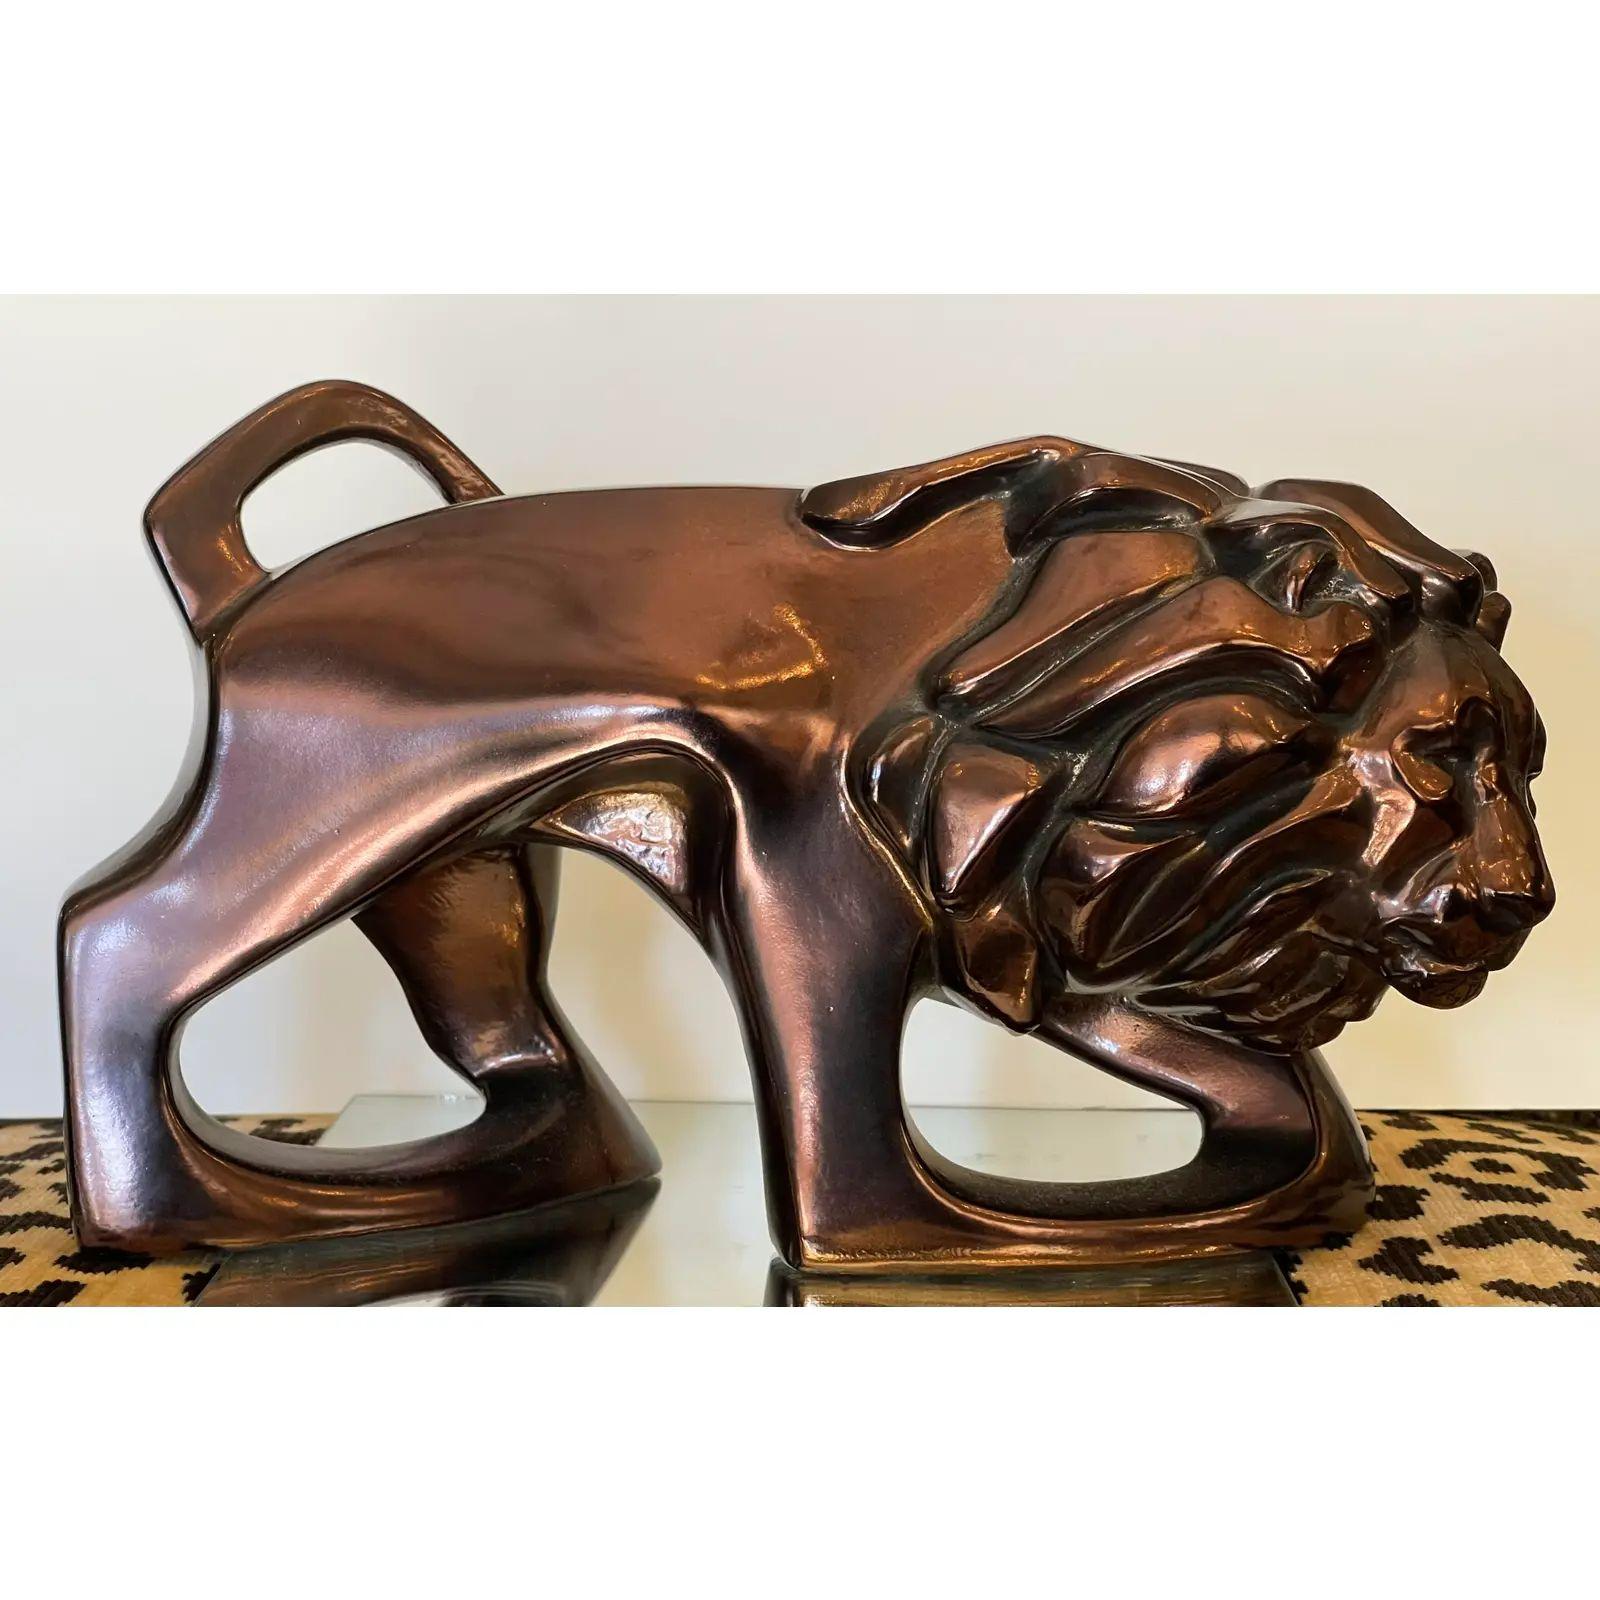 Sculpture de lion en poterie lustrée de style Art Déco Carl Schultz. Elle présente un modernisme unique en matière de poterie lustrée. Elle est signée par l'artiste C. Schultz et datée de 1979.

Informations complémentaires : 
Matériaux :